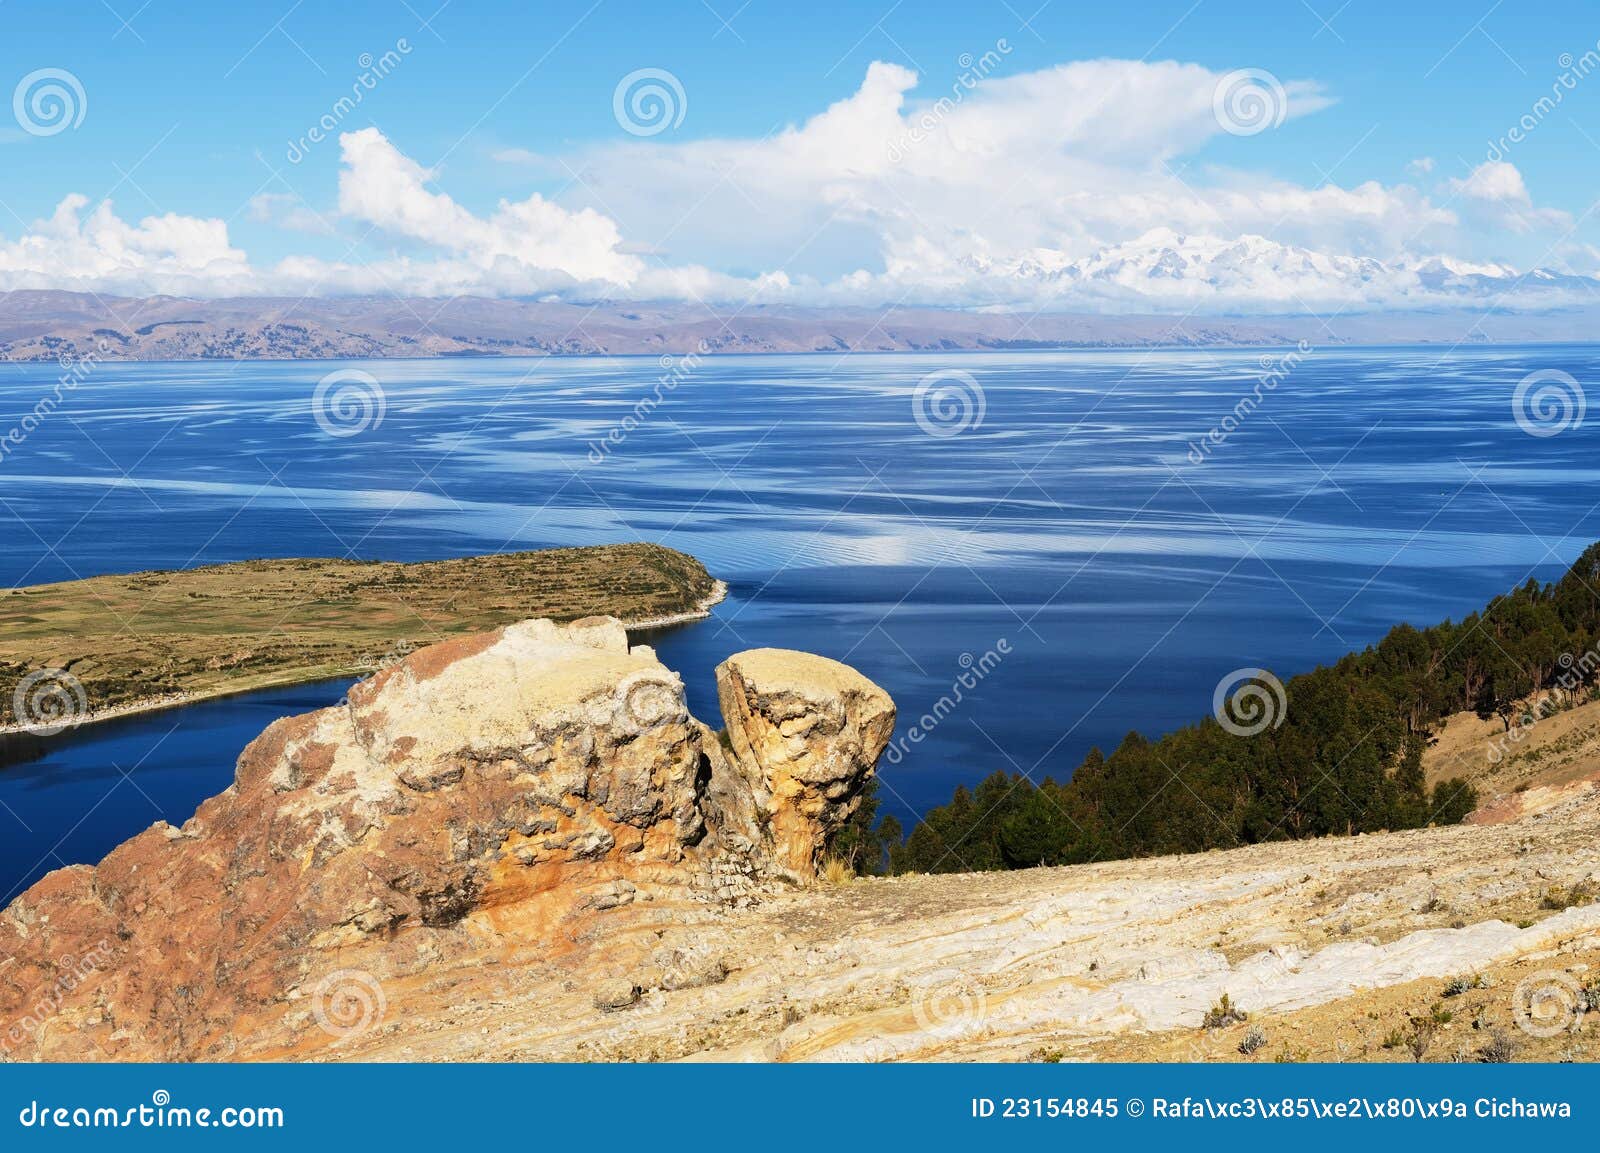 titicaca lake, bolivia, isla del sol landscape